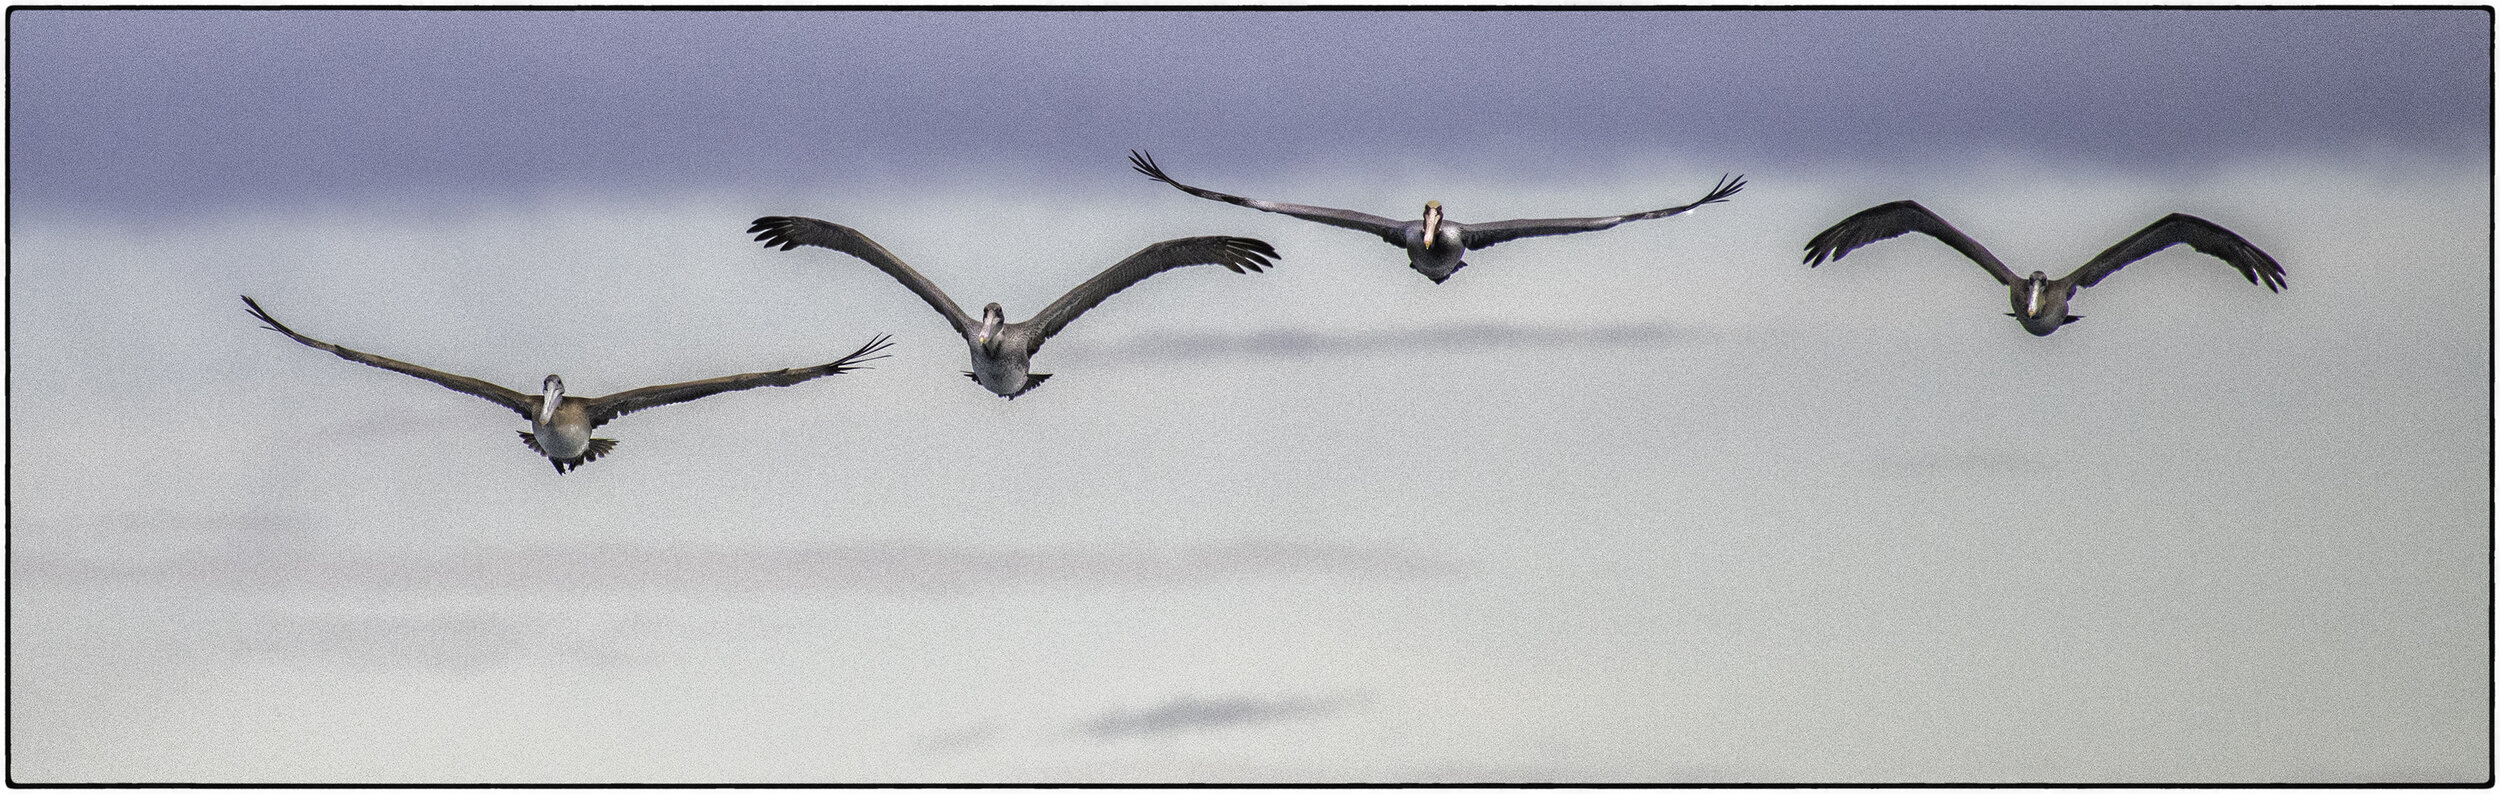 Pelicans, Monterey